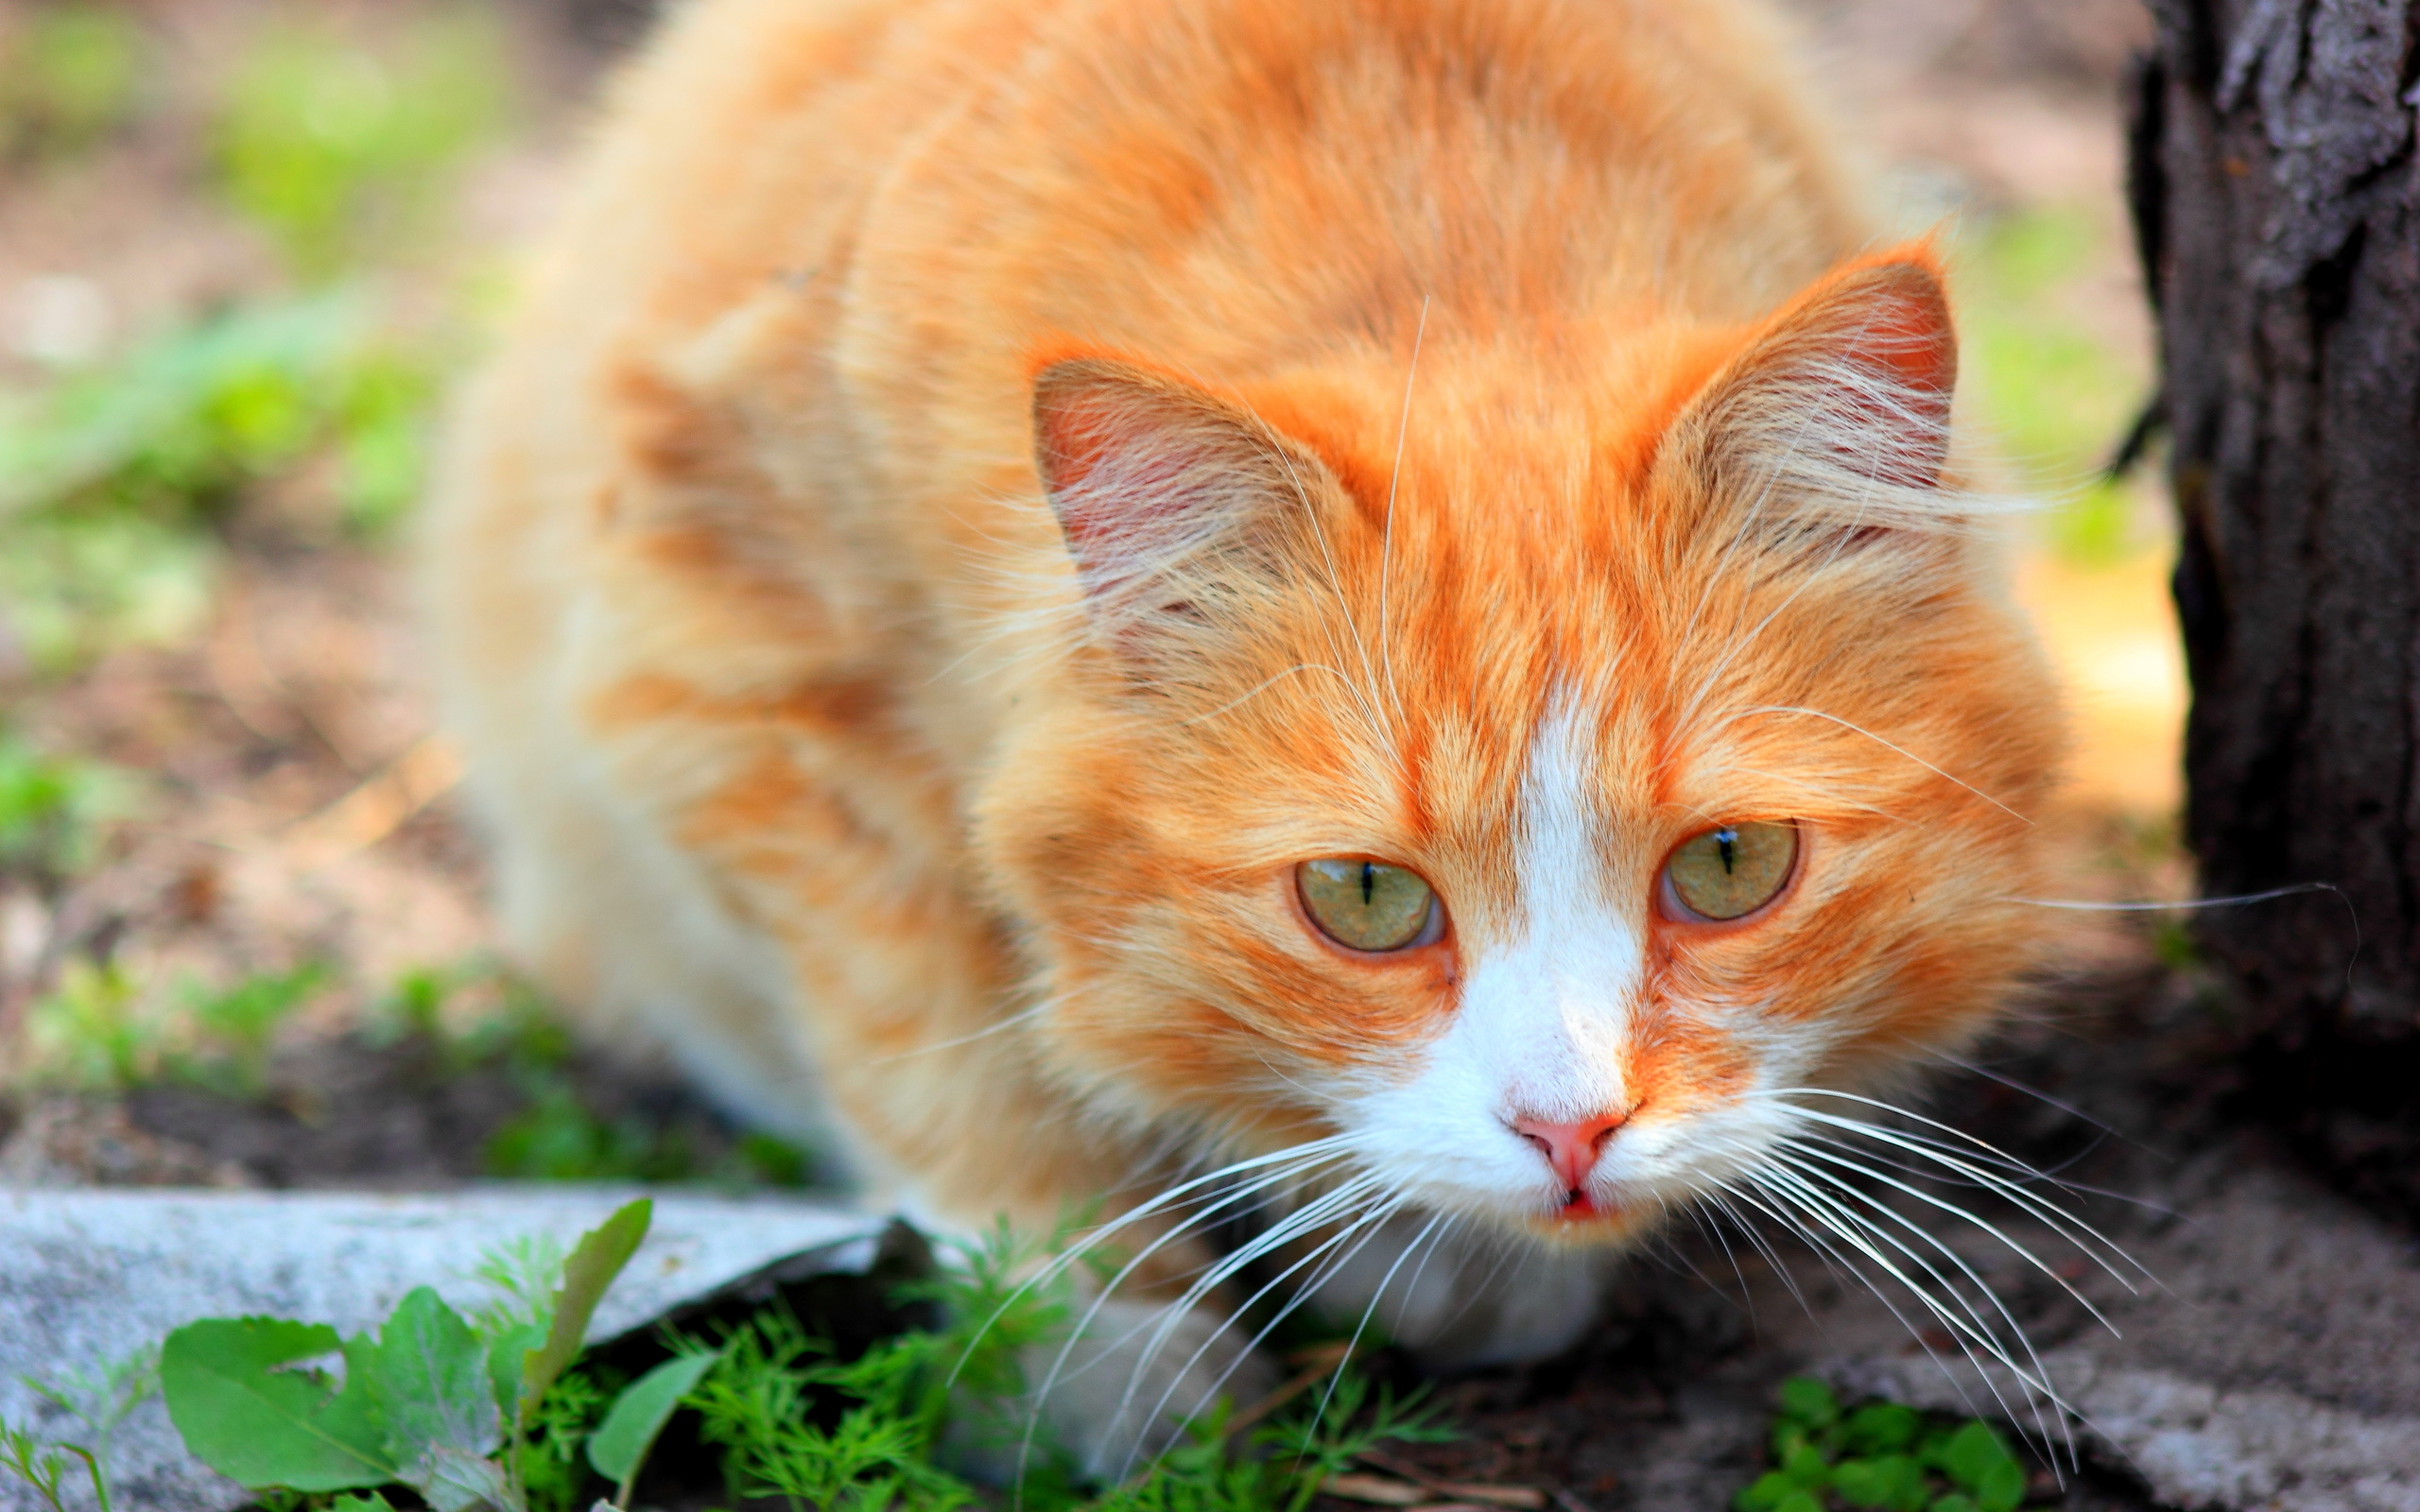 Картинки рыжего цвета. Турецкая Анатолийская кошка рыжая. Анатолийская кошка пушистая рыжая. Бело рыжая кошка. Рыже белая кошка с зелеными глазами.